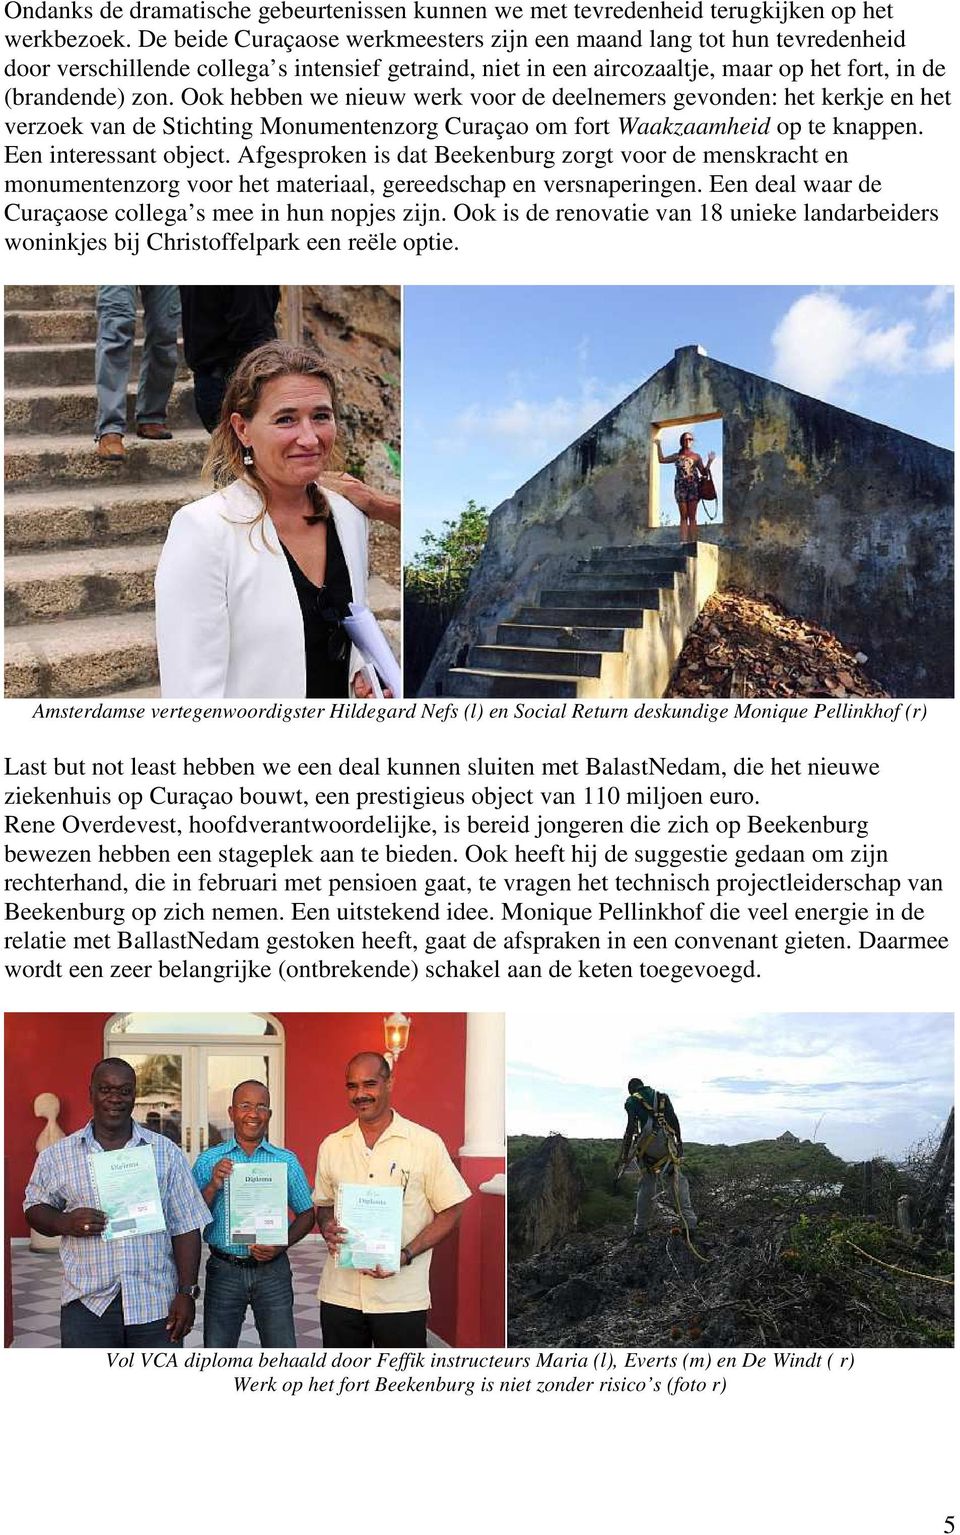 Ook hebben we nieuw werk voor de deelnemers gevonden: het kerkje en het verzoek van de Stichting Monumentenzorg Curaçao om fort Waakzaamheid op te knappen. Een interessant object.